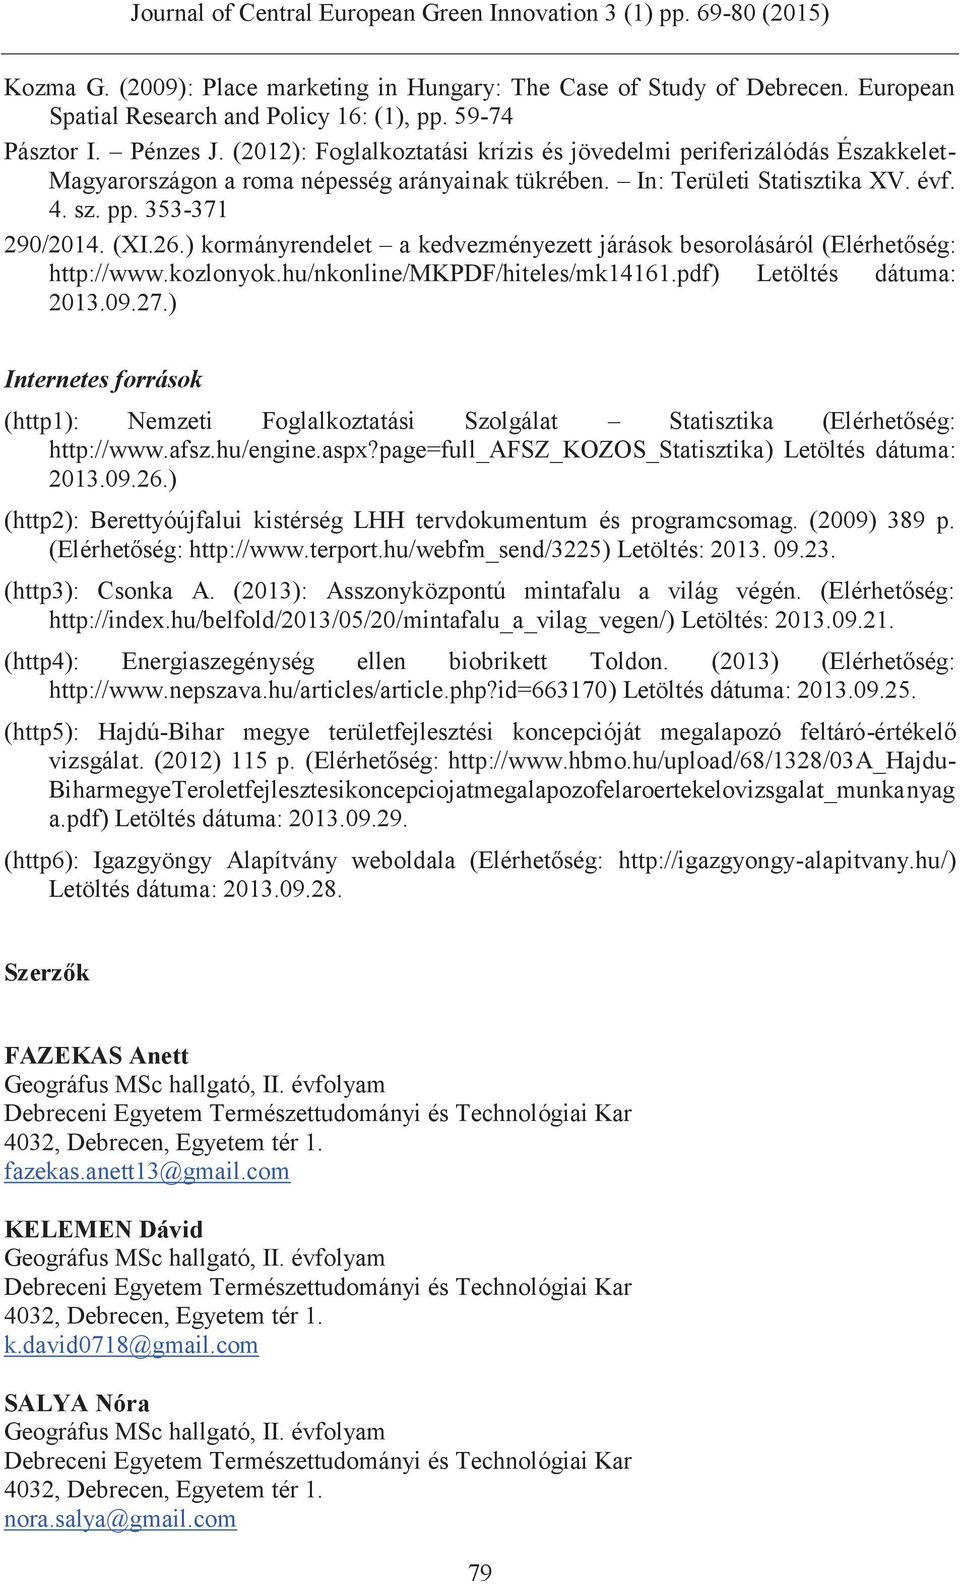 ) kormányrendelet a kedvezményezett járások besorolásáról (Elérhetőség: http://www.kozlonyok.hu/nkonline/mkpdf/hiteles/mk14161.pdf) Letöltés dátuma: 2013.09.27.